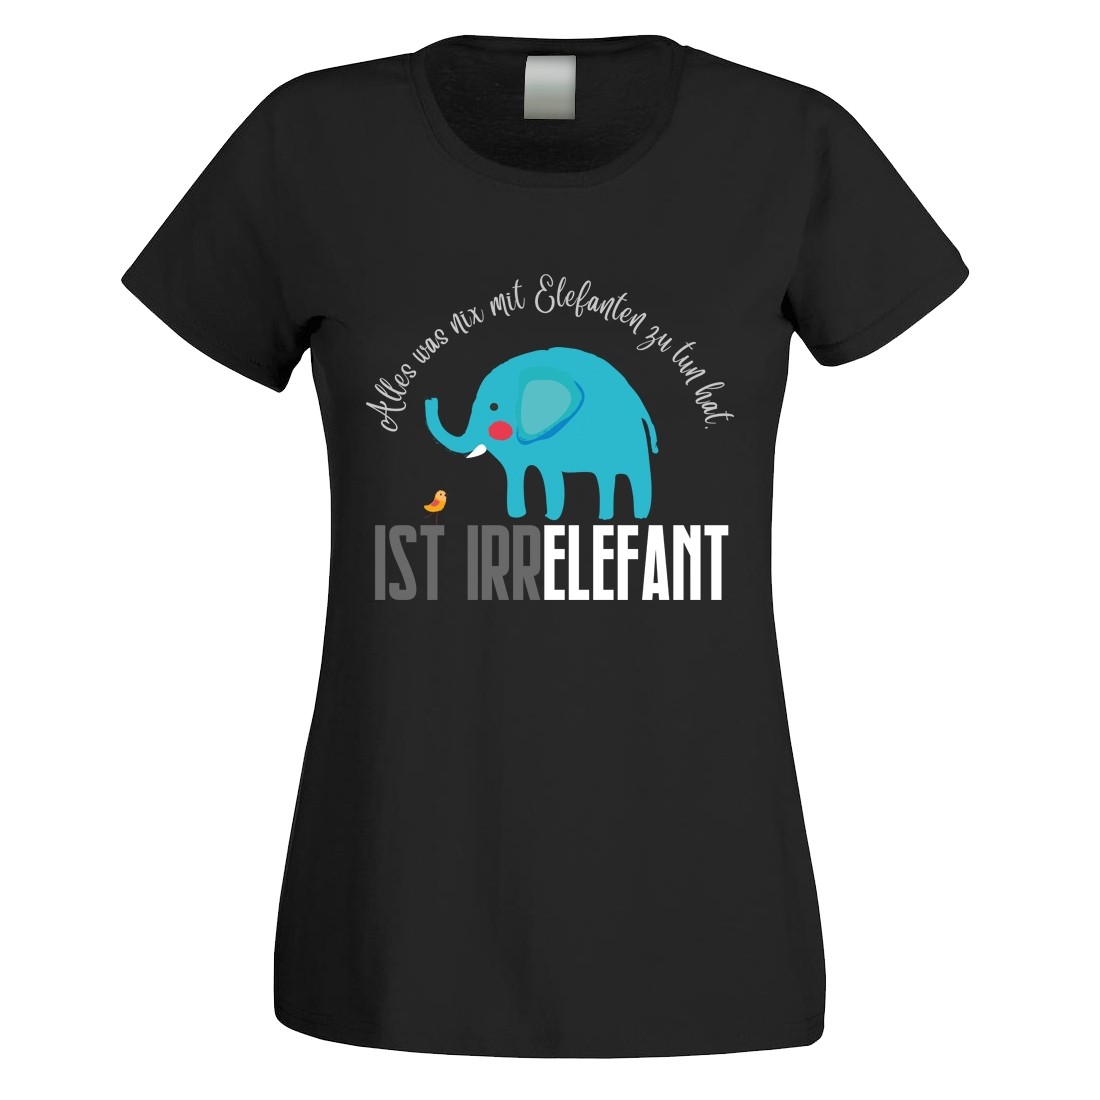 Funshirt weiß oder schwarz, als Tanktop oder Shirt - Alles was nix mit Elefanten zu tun hat....